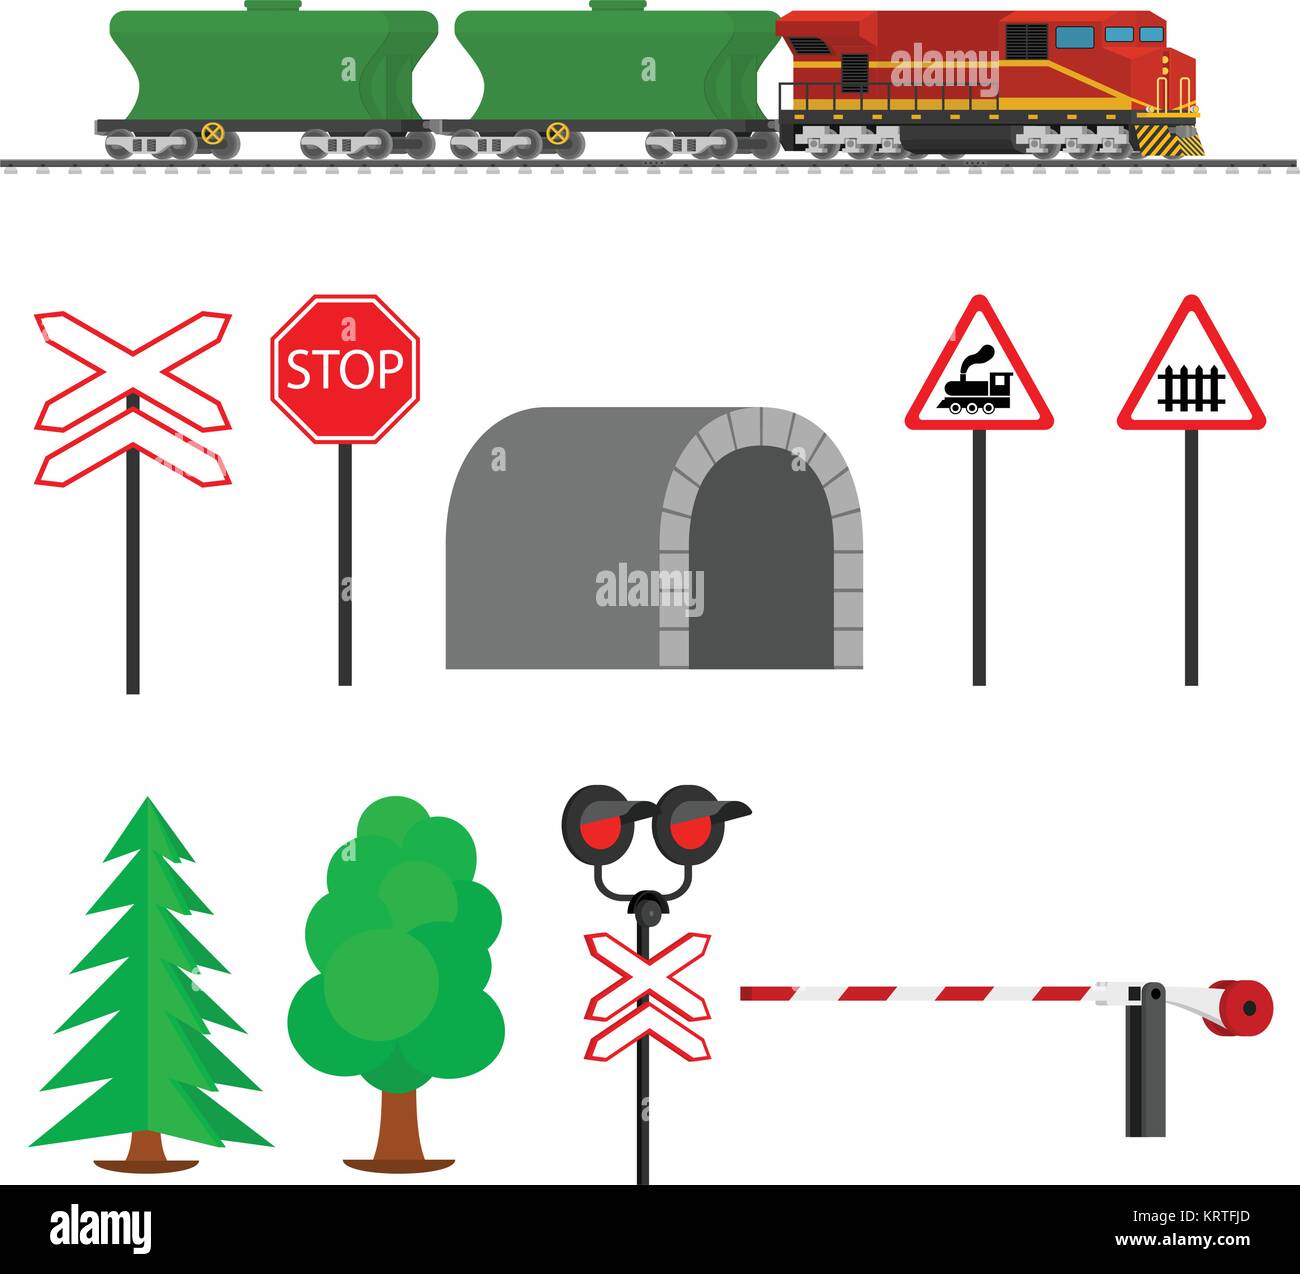 El tráfico ferroviario y los vagones del ferrocarril para el transporte de granos. Transporte Ferrocarril. Equipos Ferroviarios con señales, barreras, alarmas, traf Ilustración del Vector